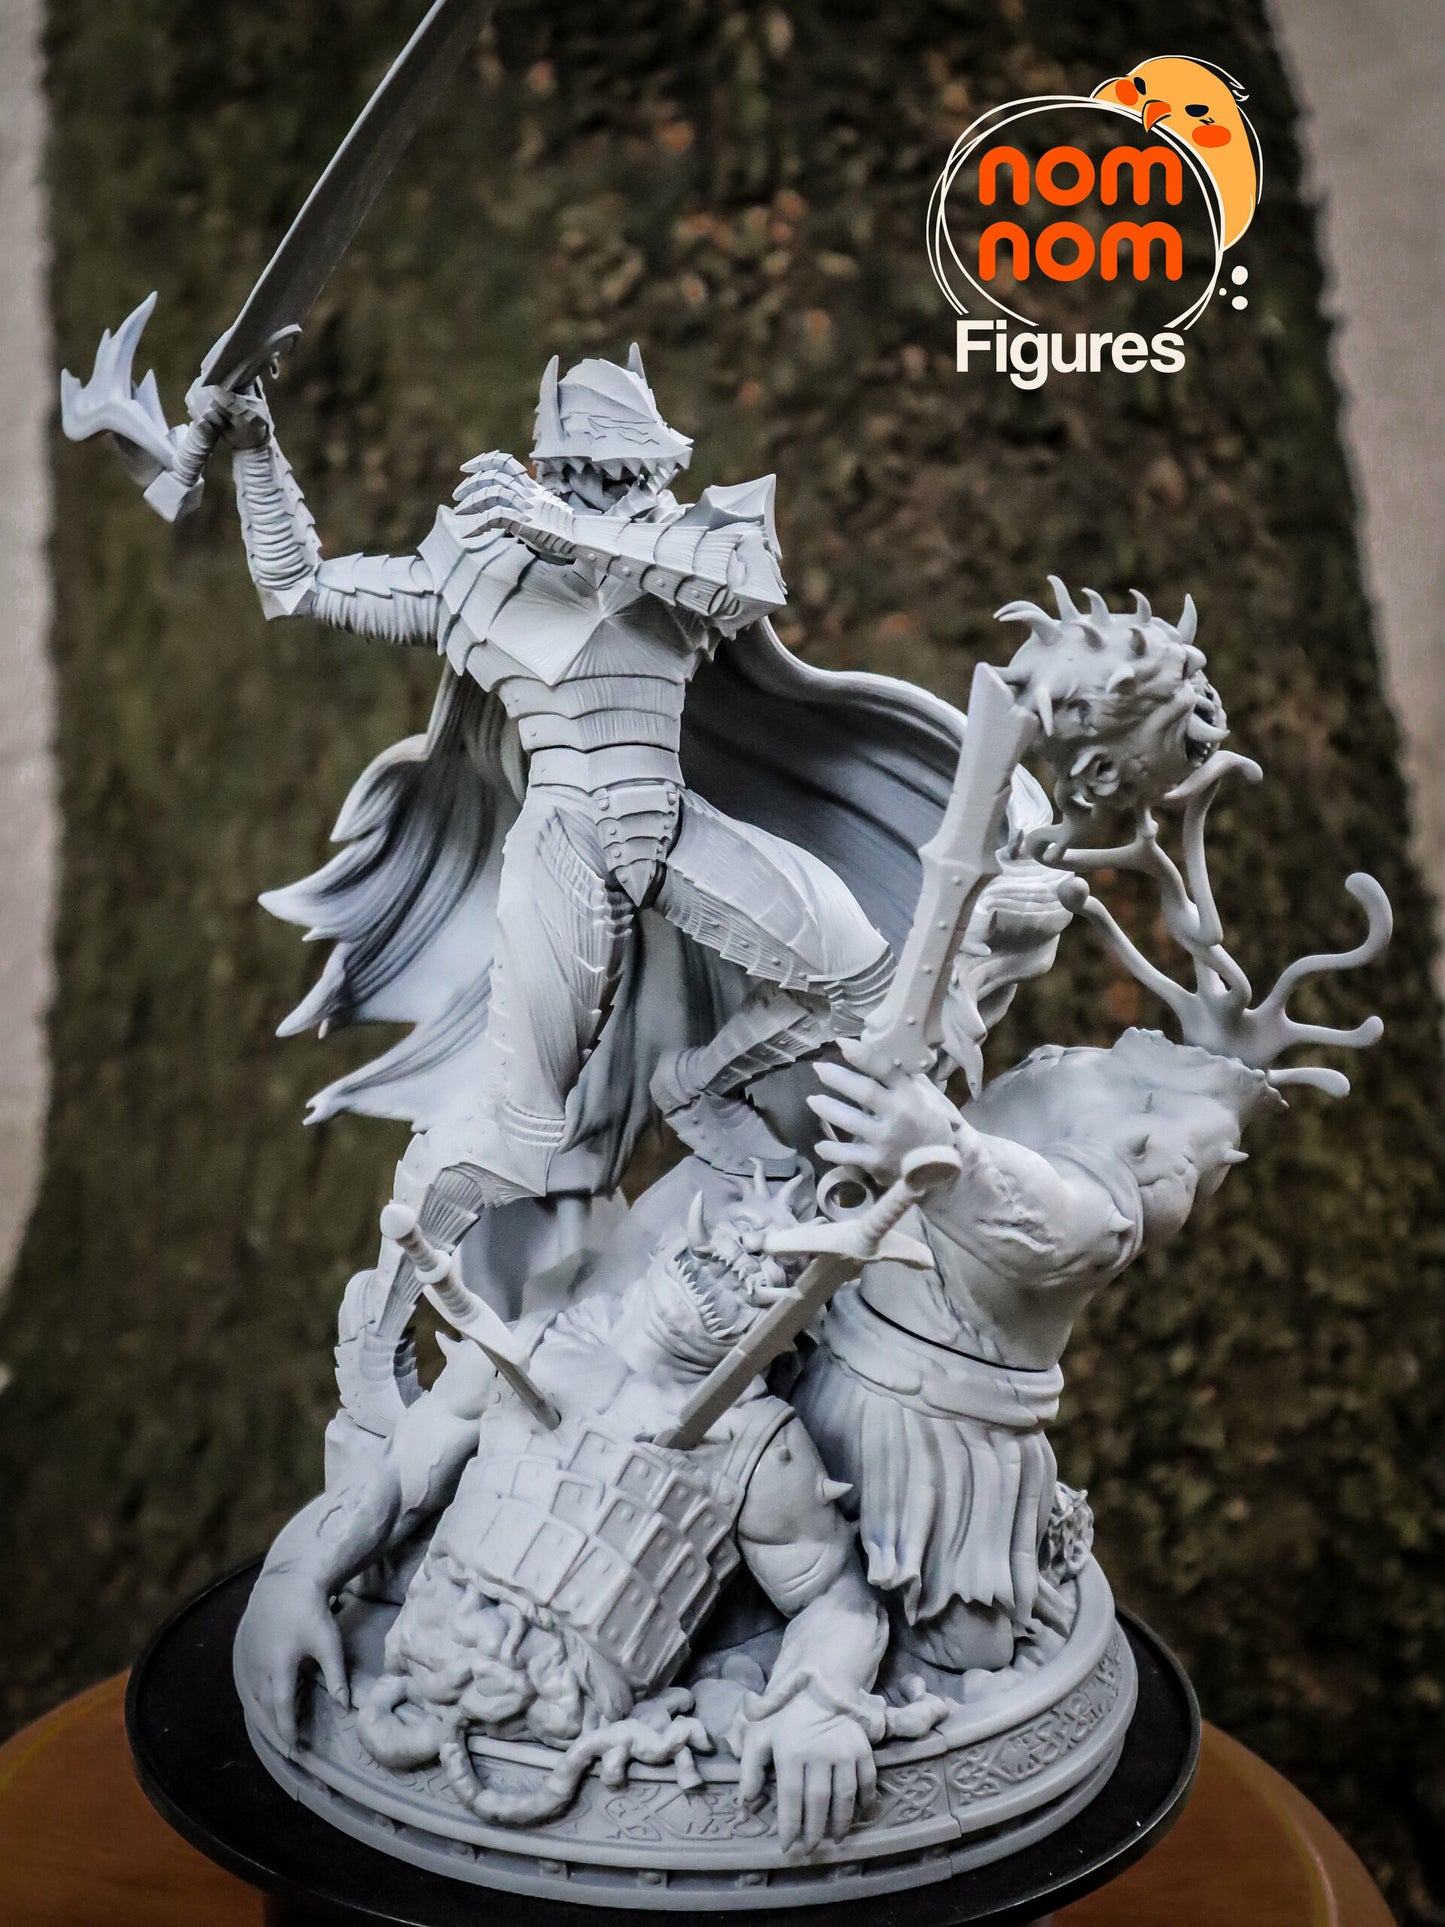 Guts - Berserk - Version 1 3D Printed Fanmade Model by Nomnom Figures